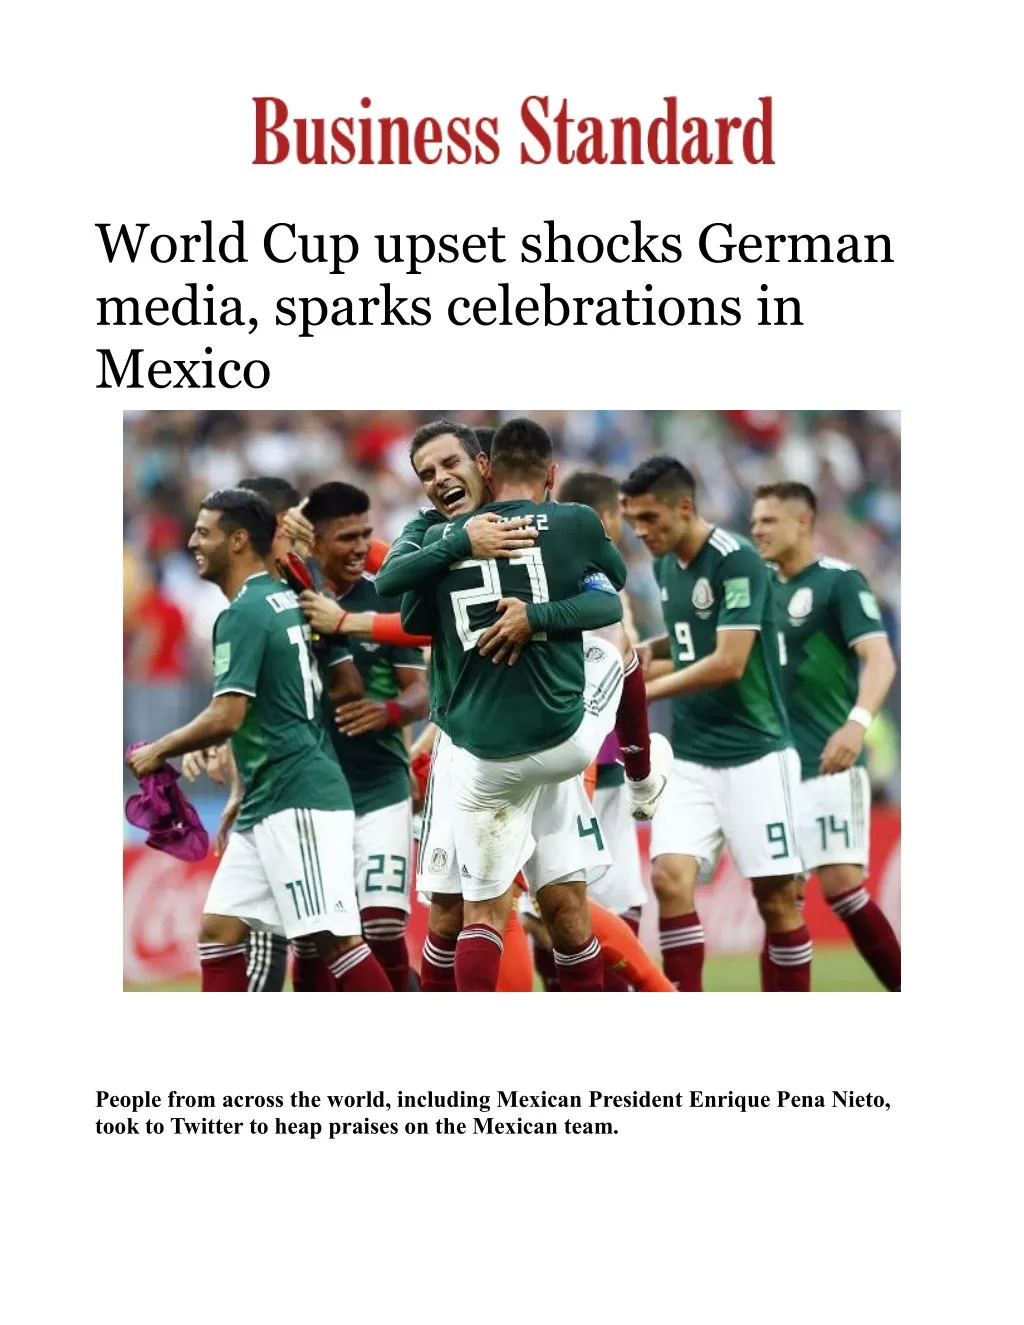 world cup upset shocks german media sparks